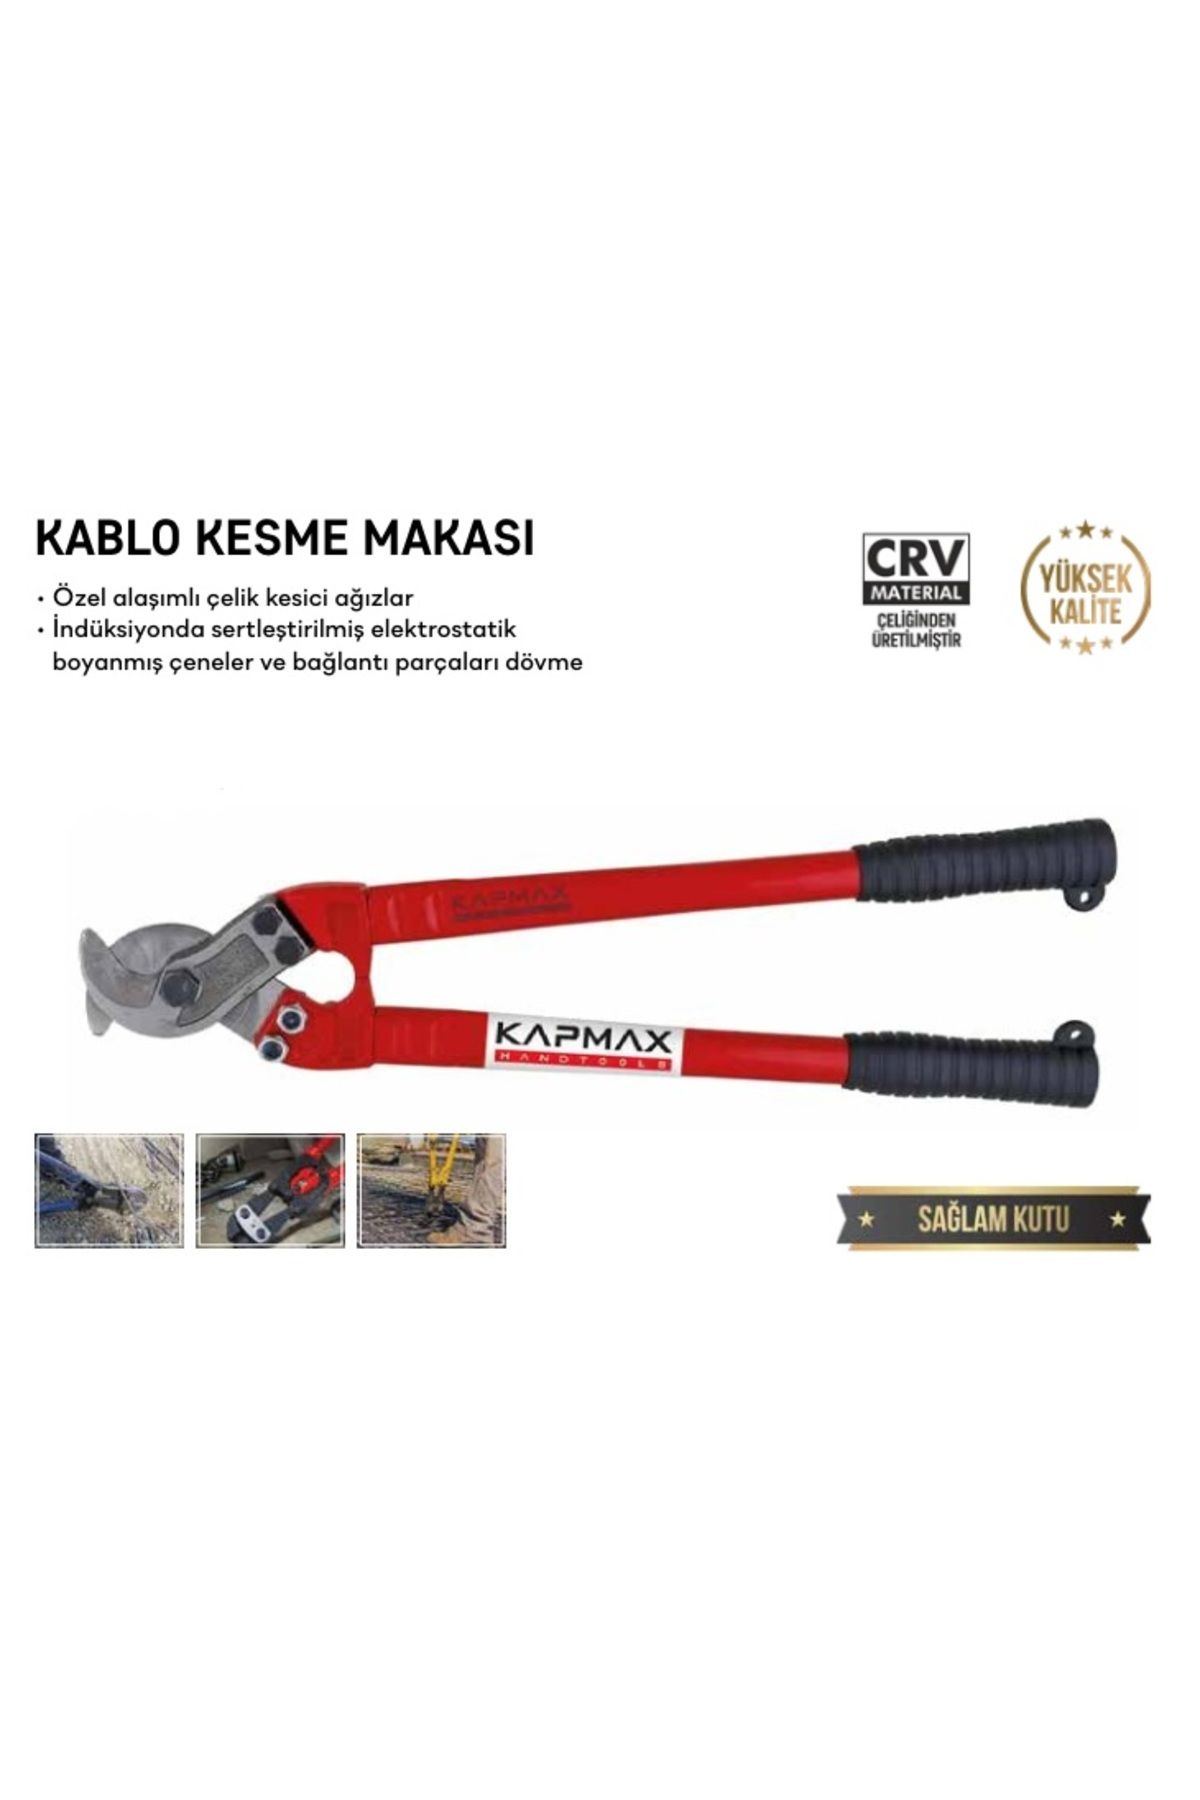 KAPMAX KABLO KESME MAKASI 24x600 mm